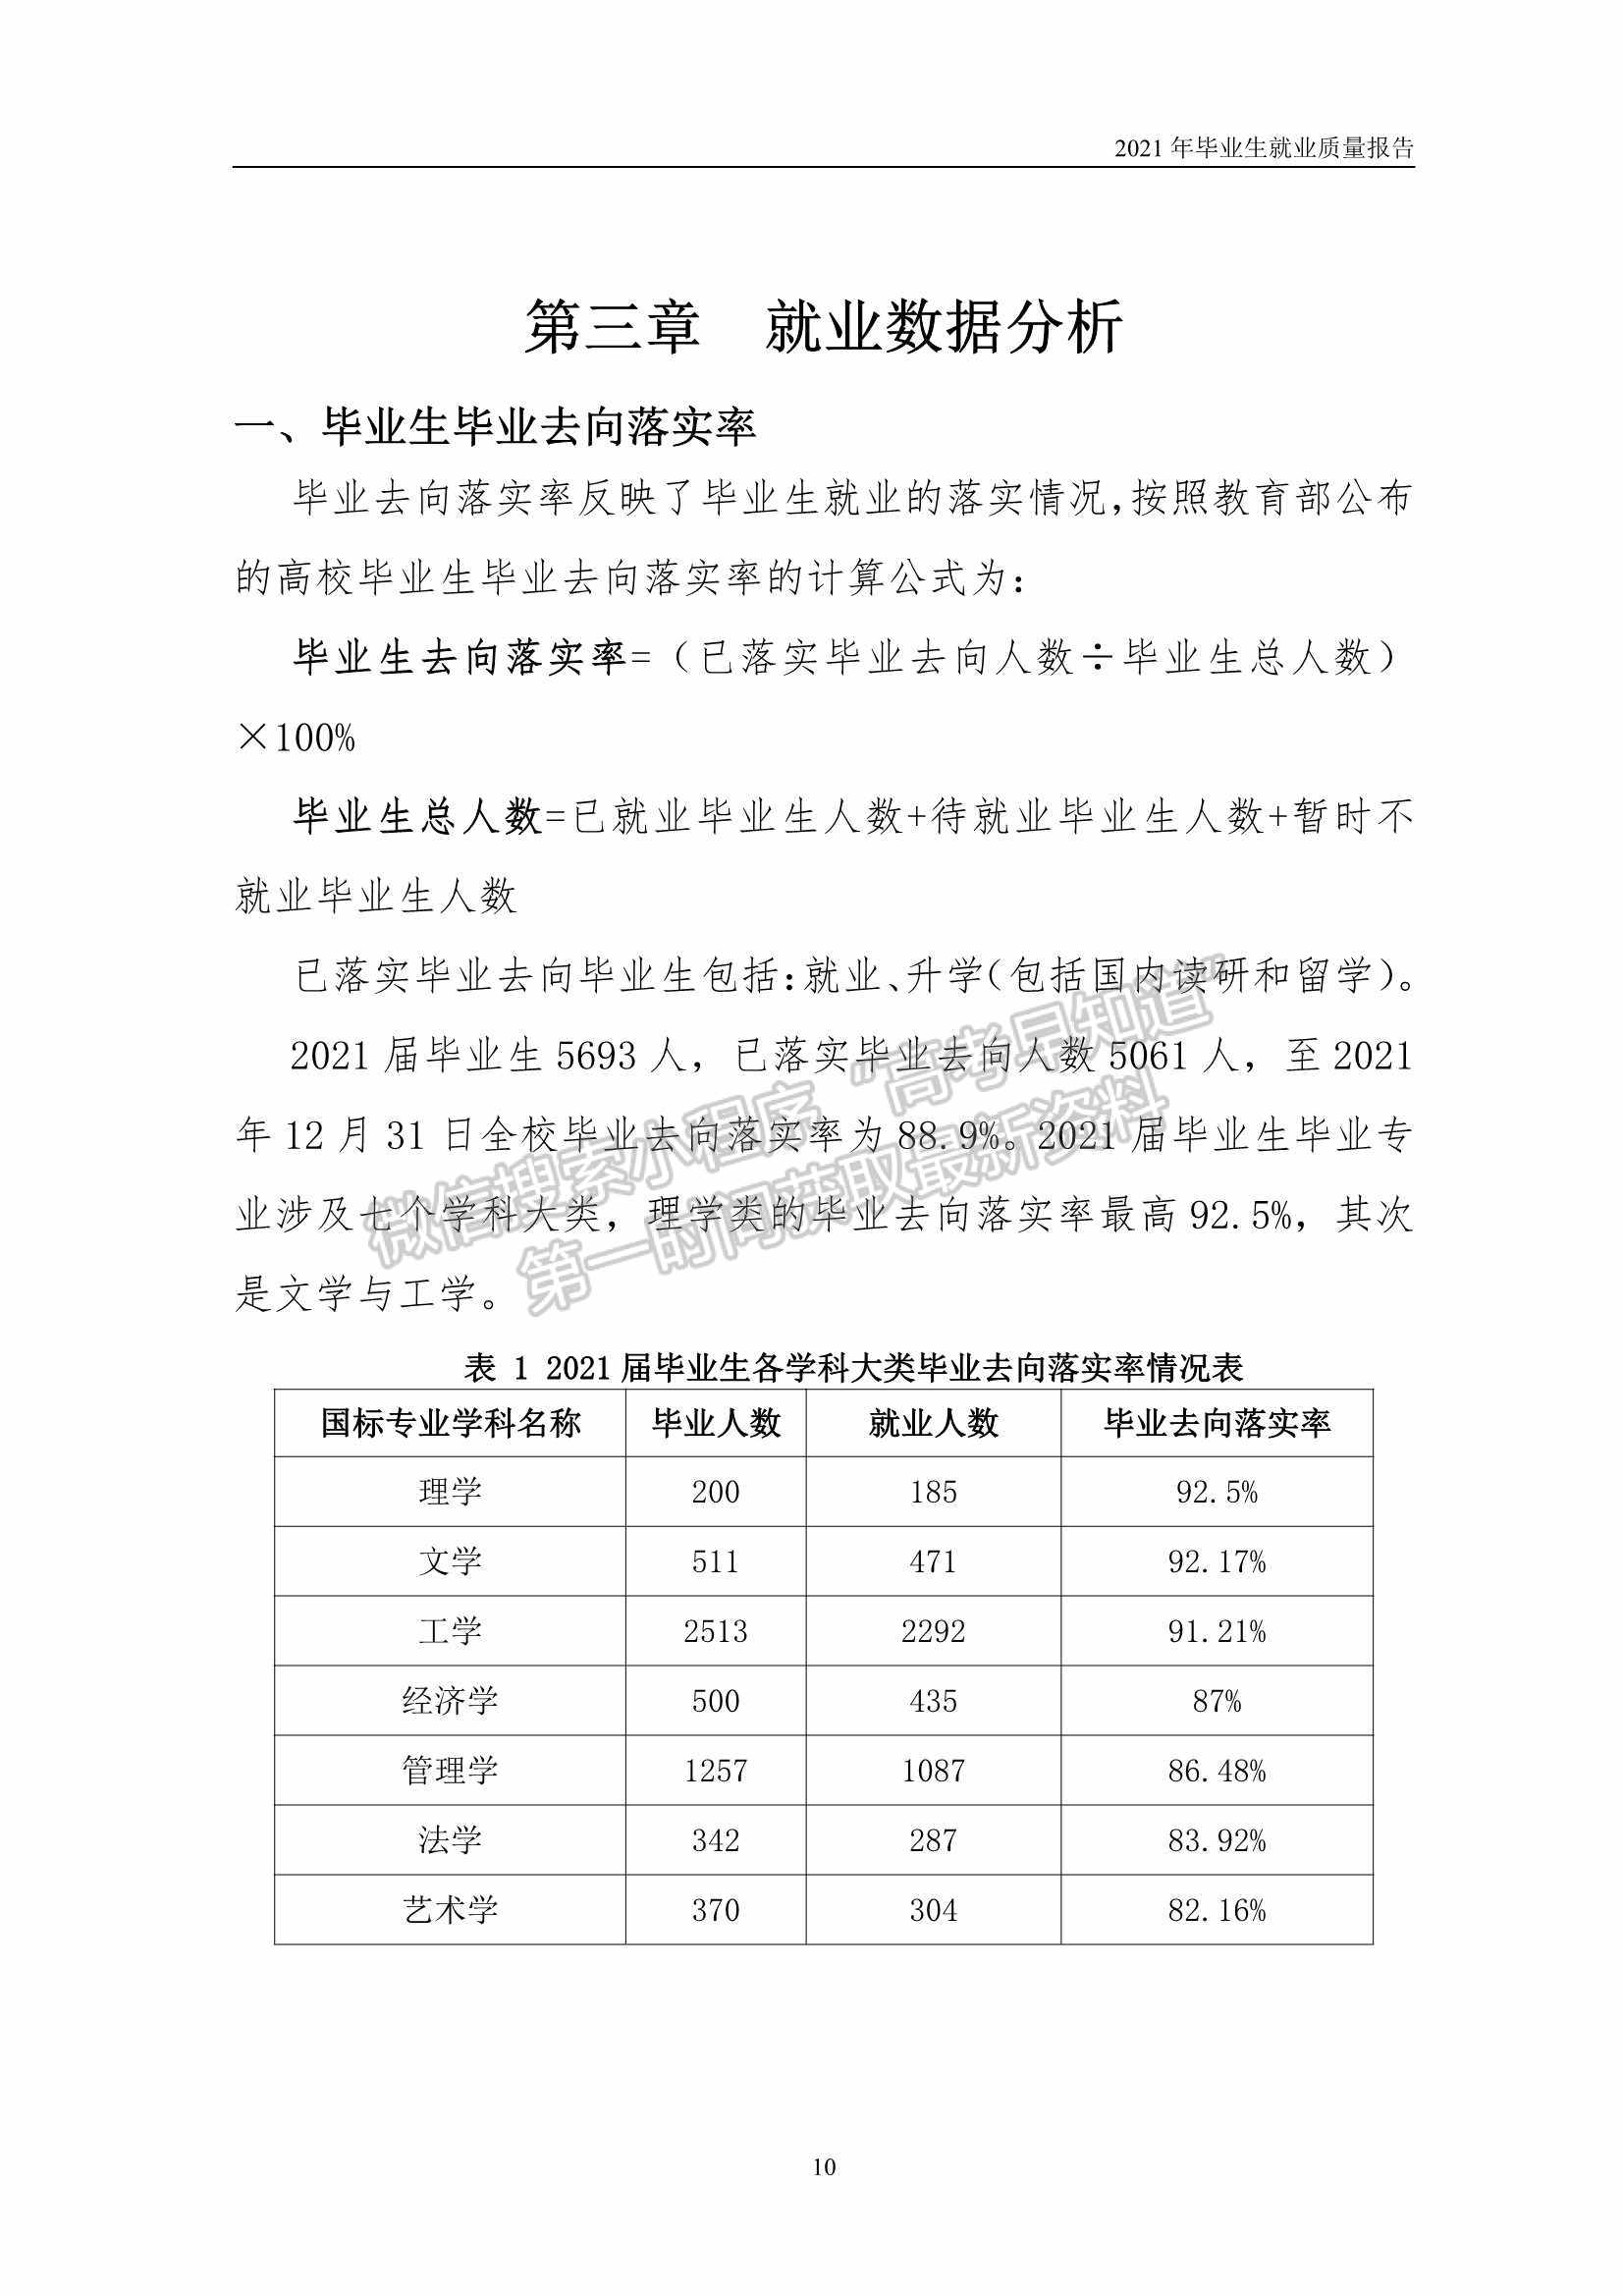 北京理工大学珠海学院2021年度毕业生就业质量年度报告